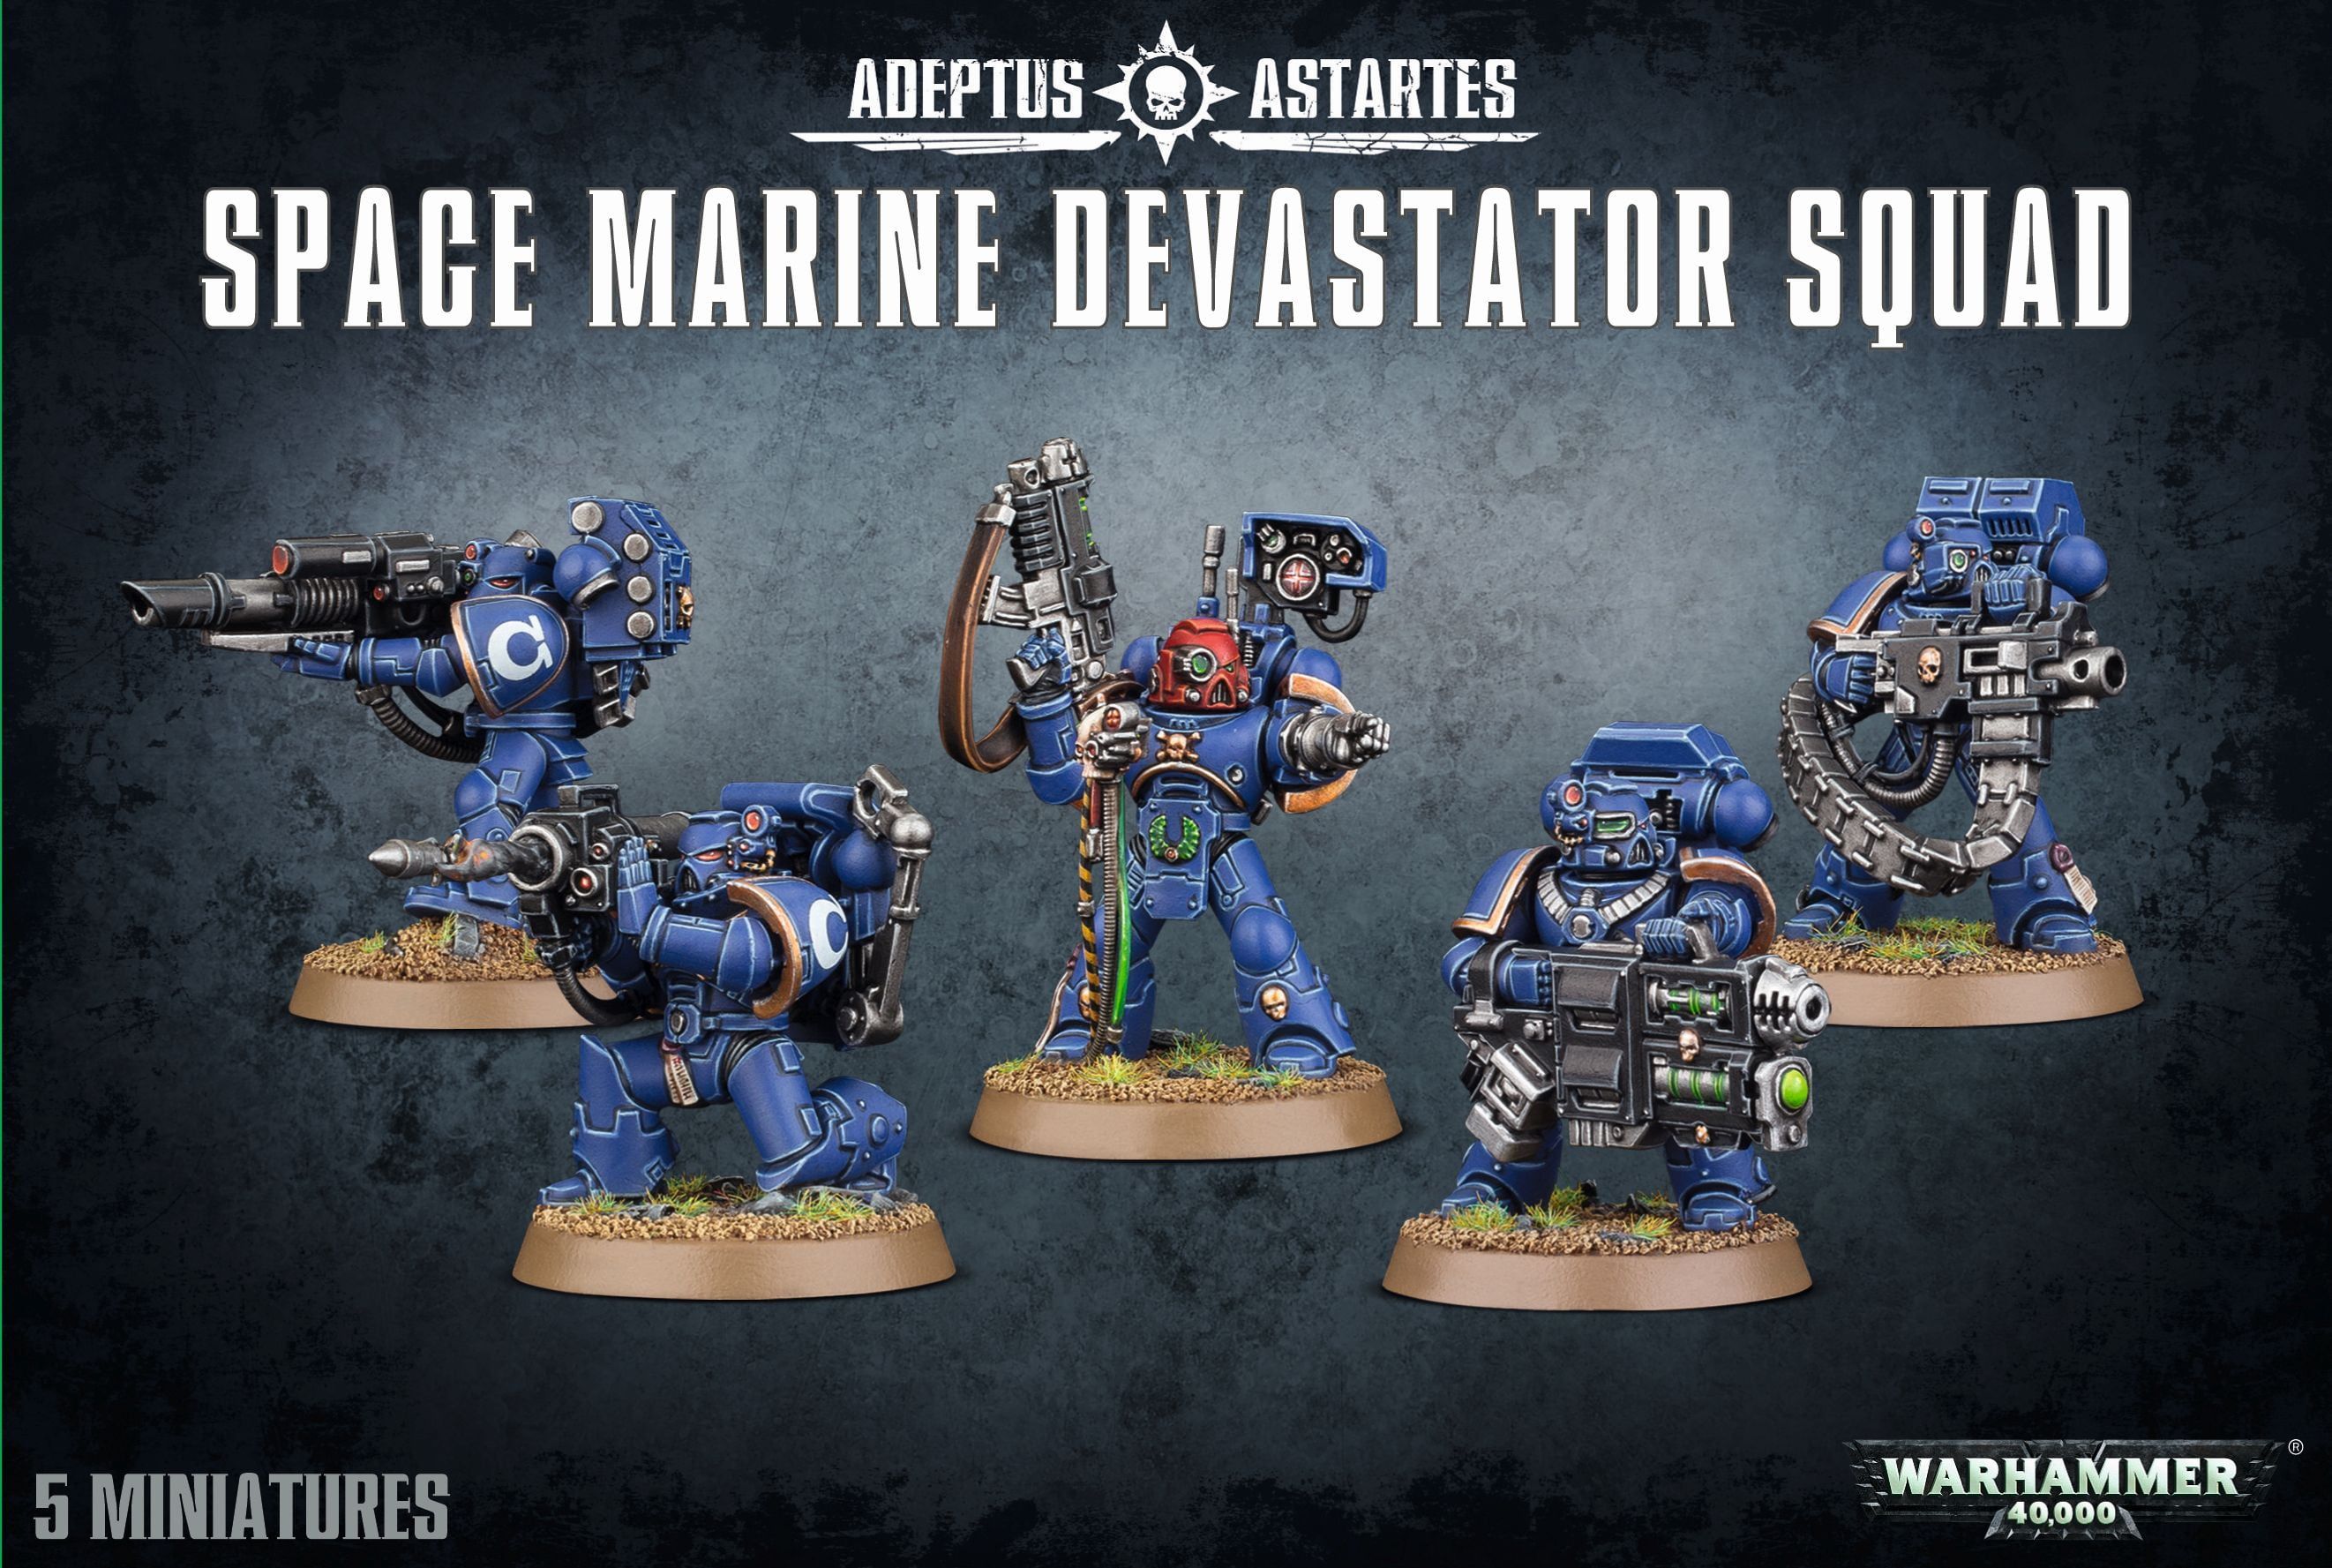 Warhammer Space Marine Devastator Squad